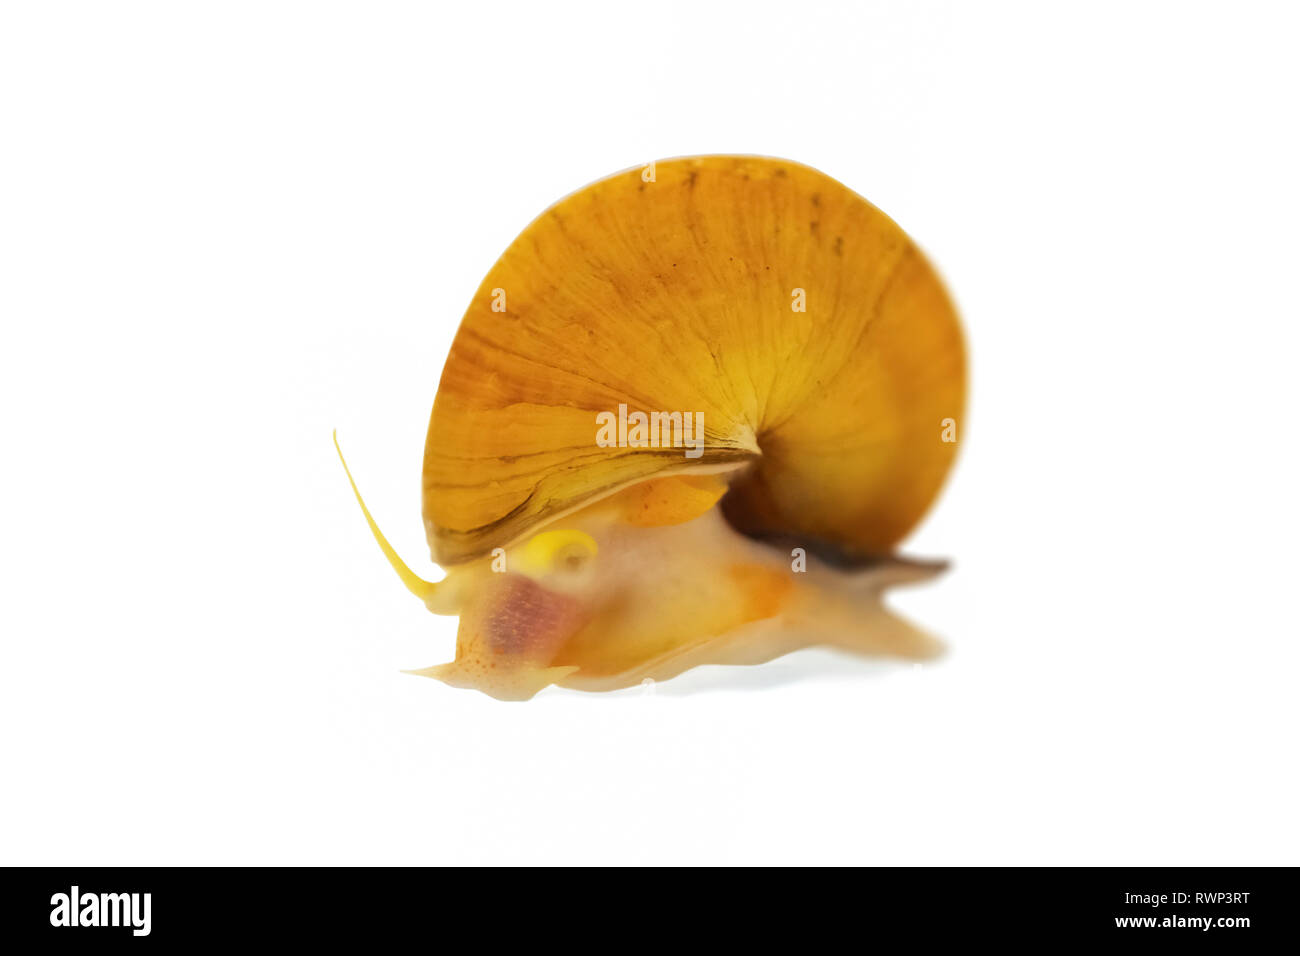 Gold Inca Snail (Pomacea bridgesii), or Apple Snail, on a white background Stock Photo